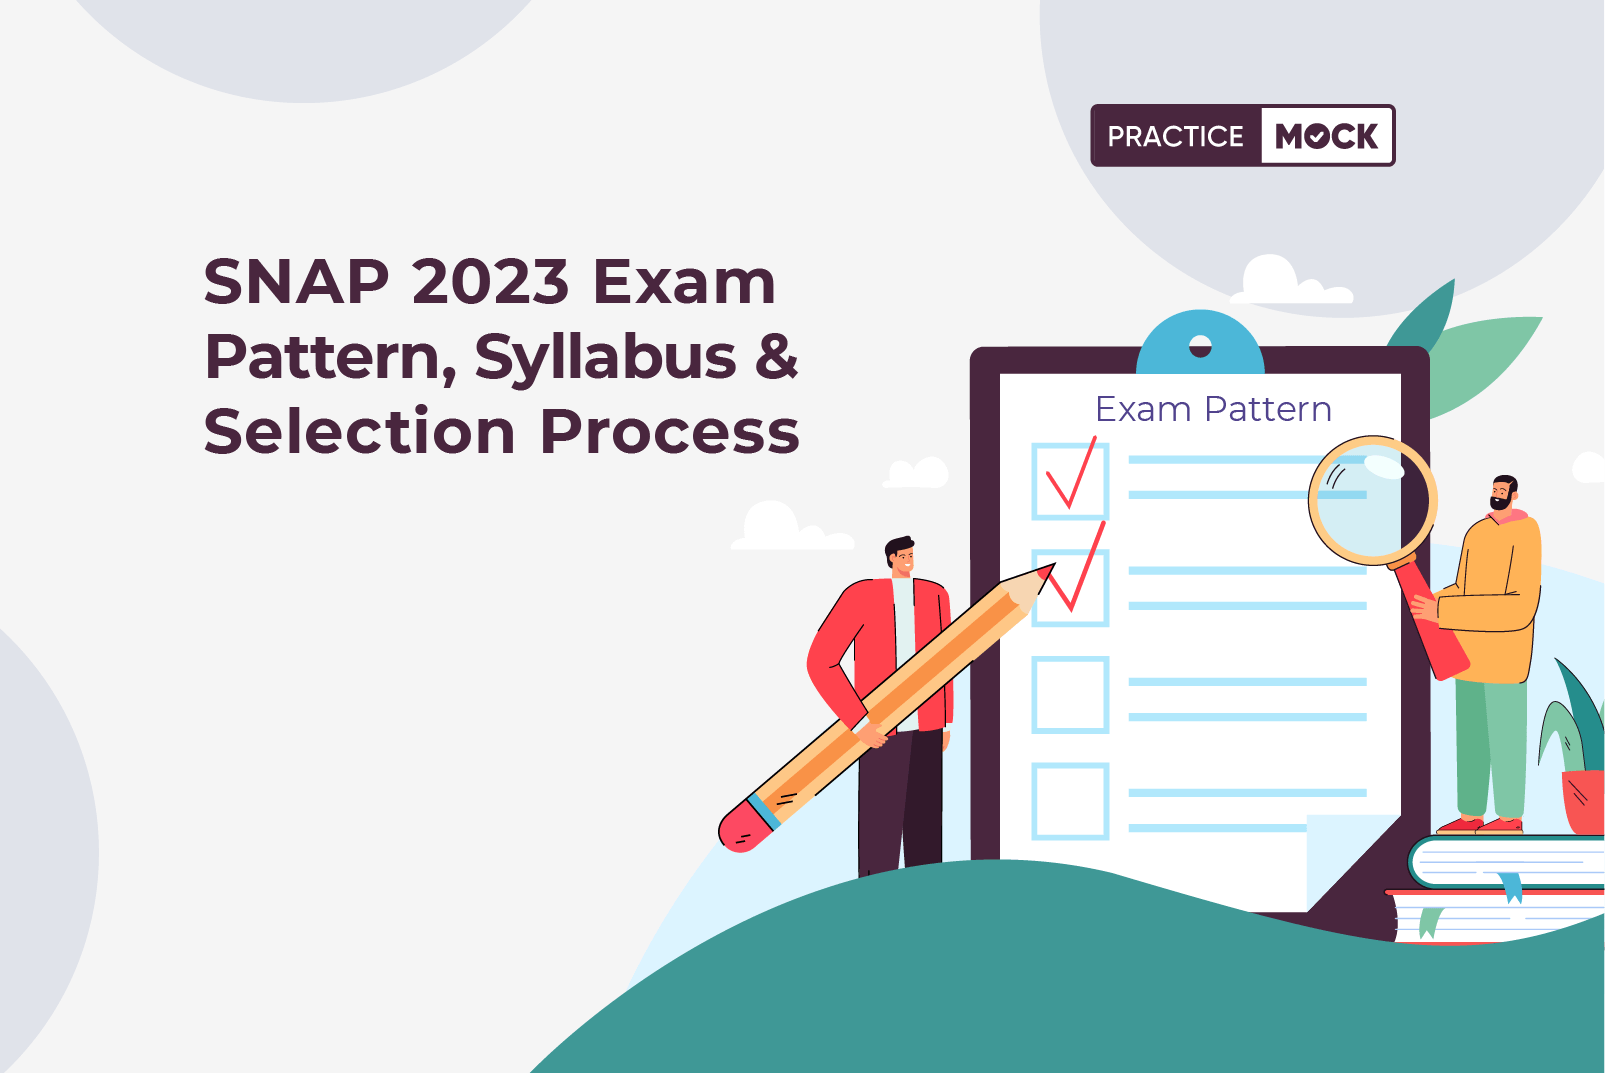 SNAP Exam Pattern & Syllabus 2023